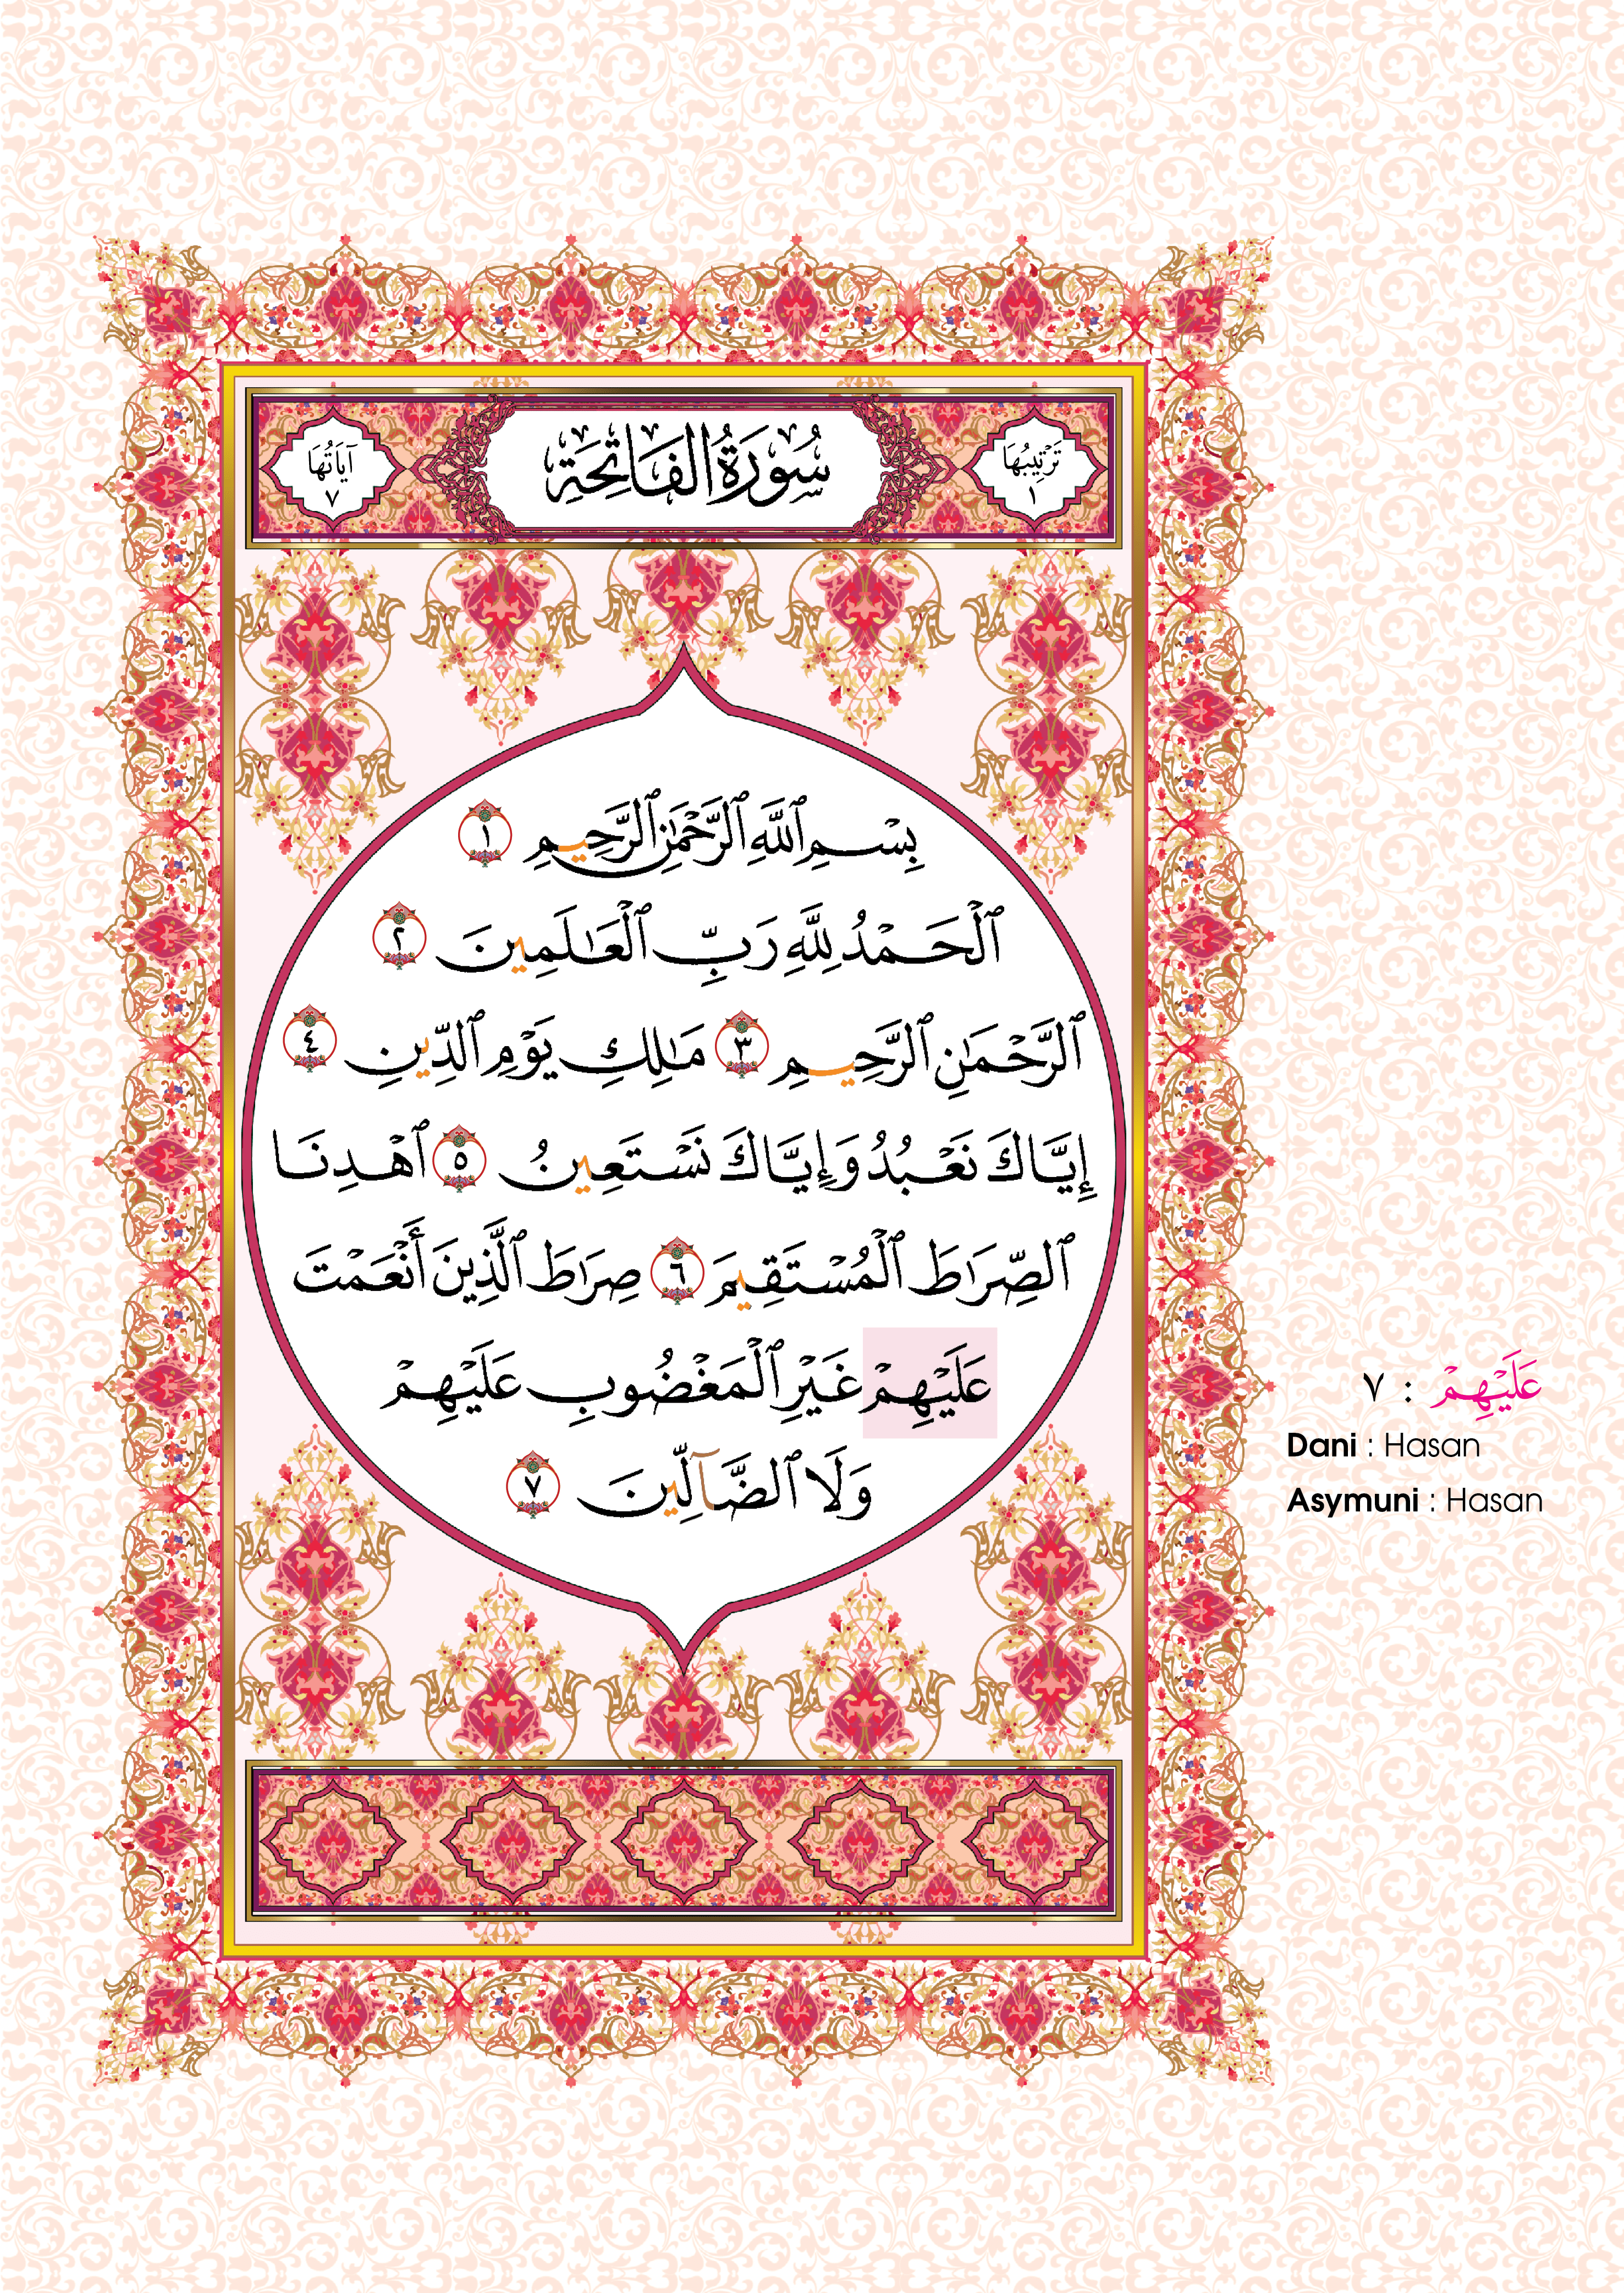 Al-Quran Al-Karim Tajwid Dan Waqaf & Ibtida’ An-Nibras Berserta Hukum Dan Rujukan - (TBAQ1047)